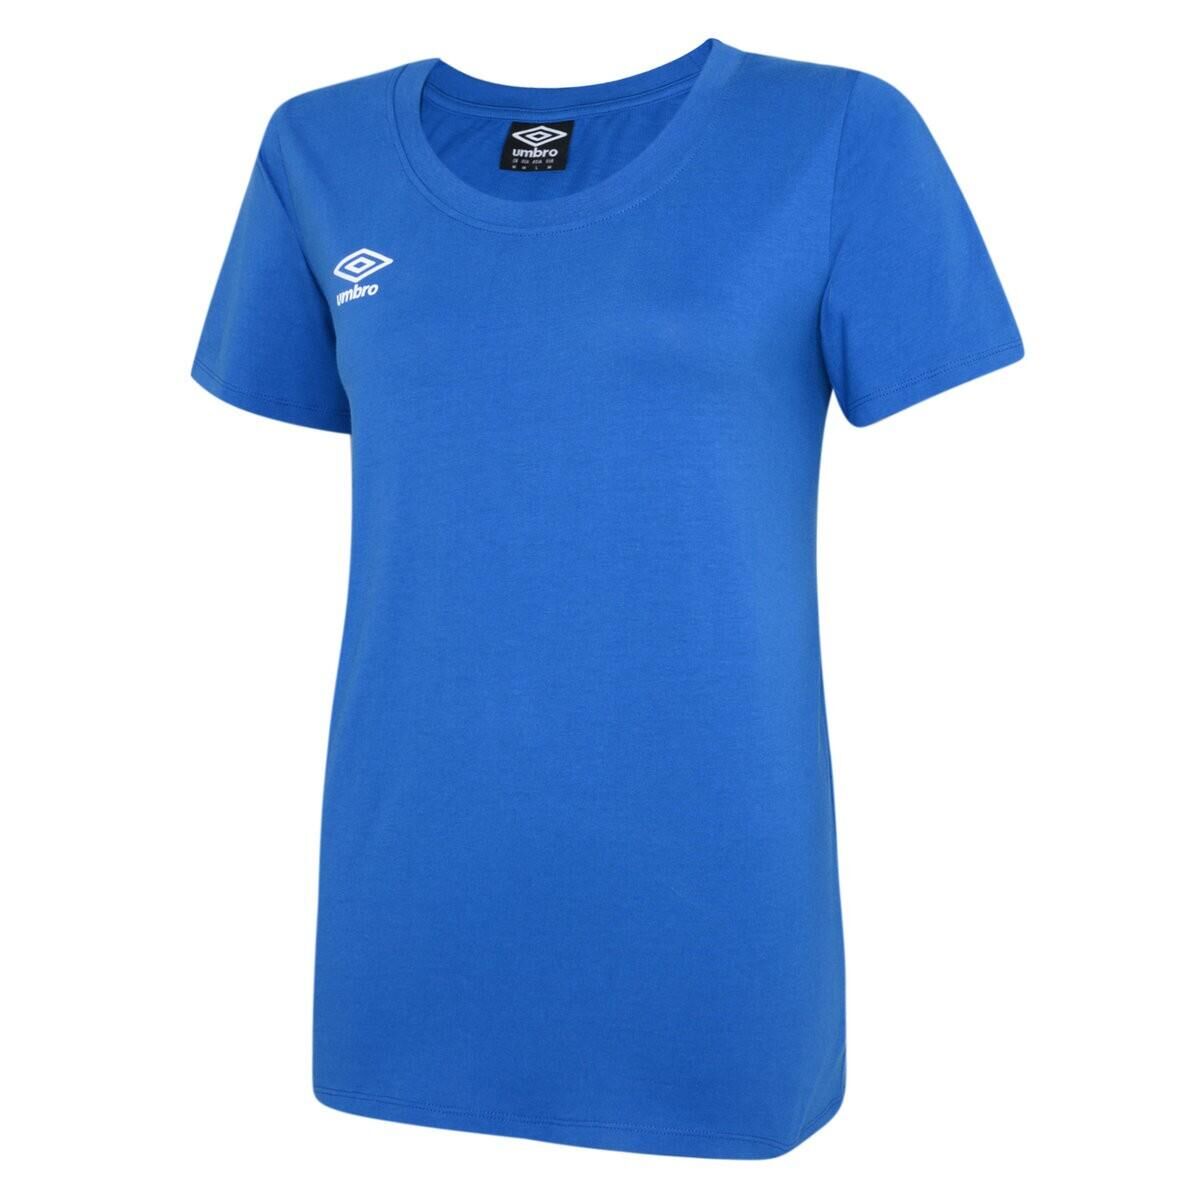 UMBRO Womens/Ladies Club Leisure TShirt (Royal Blue/White)